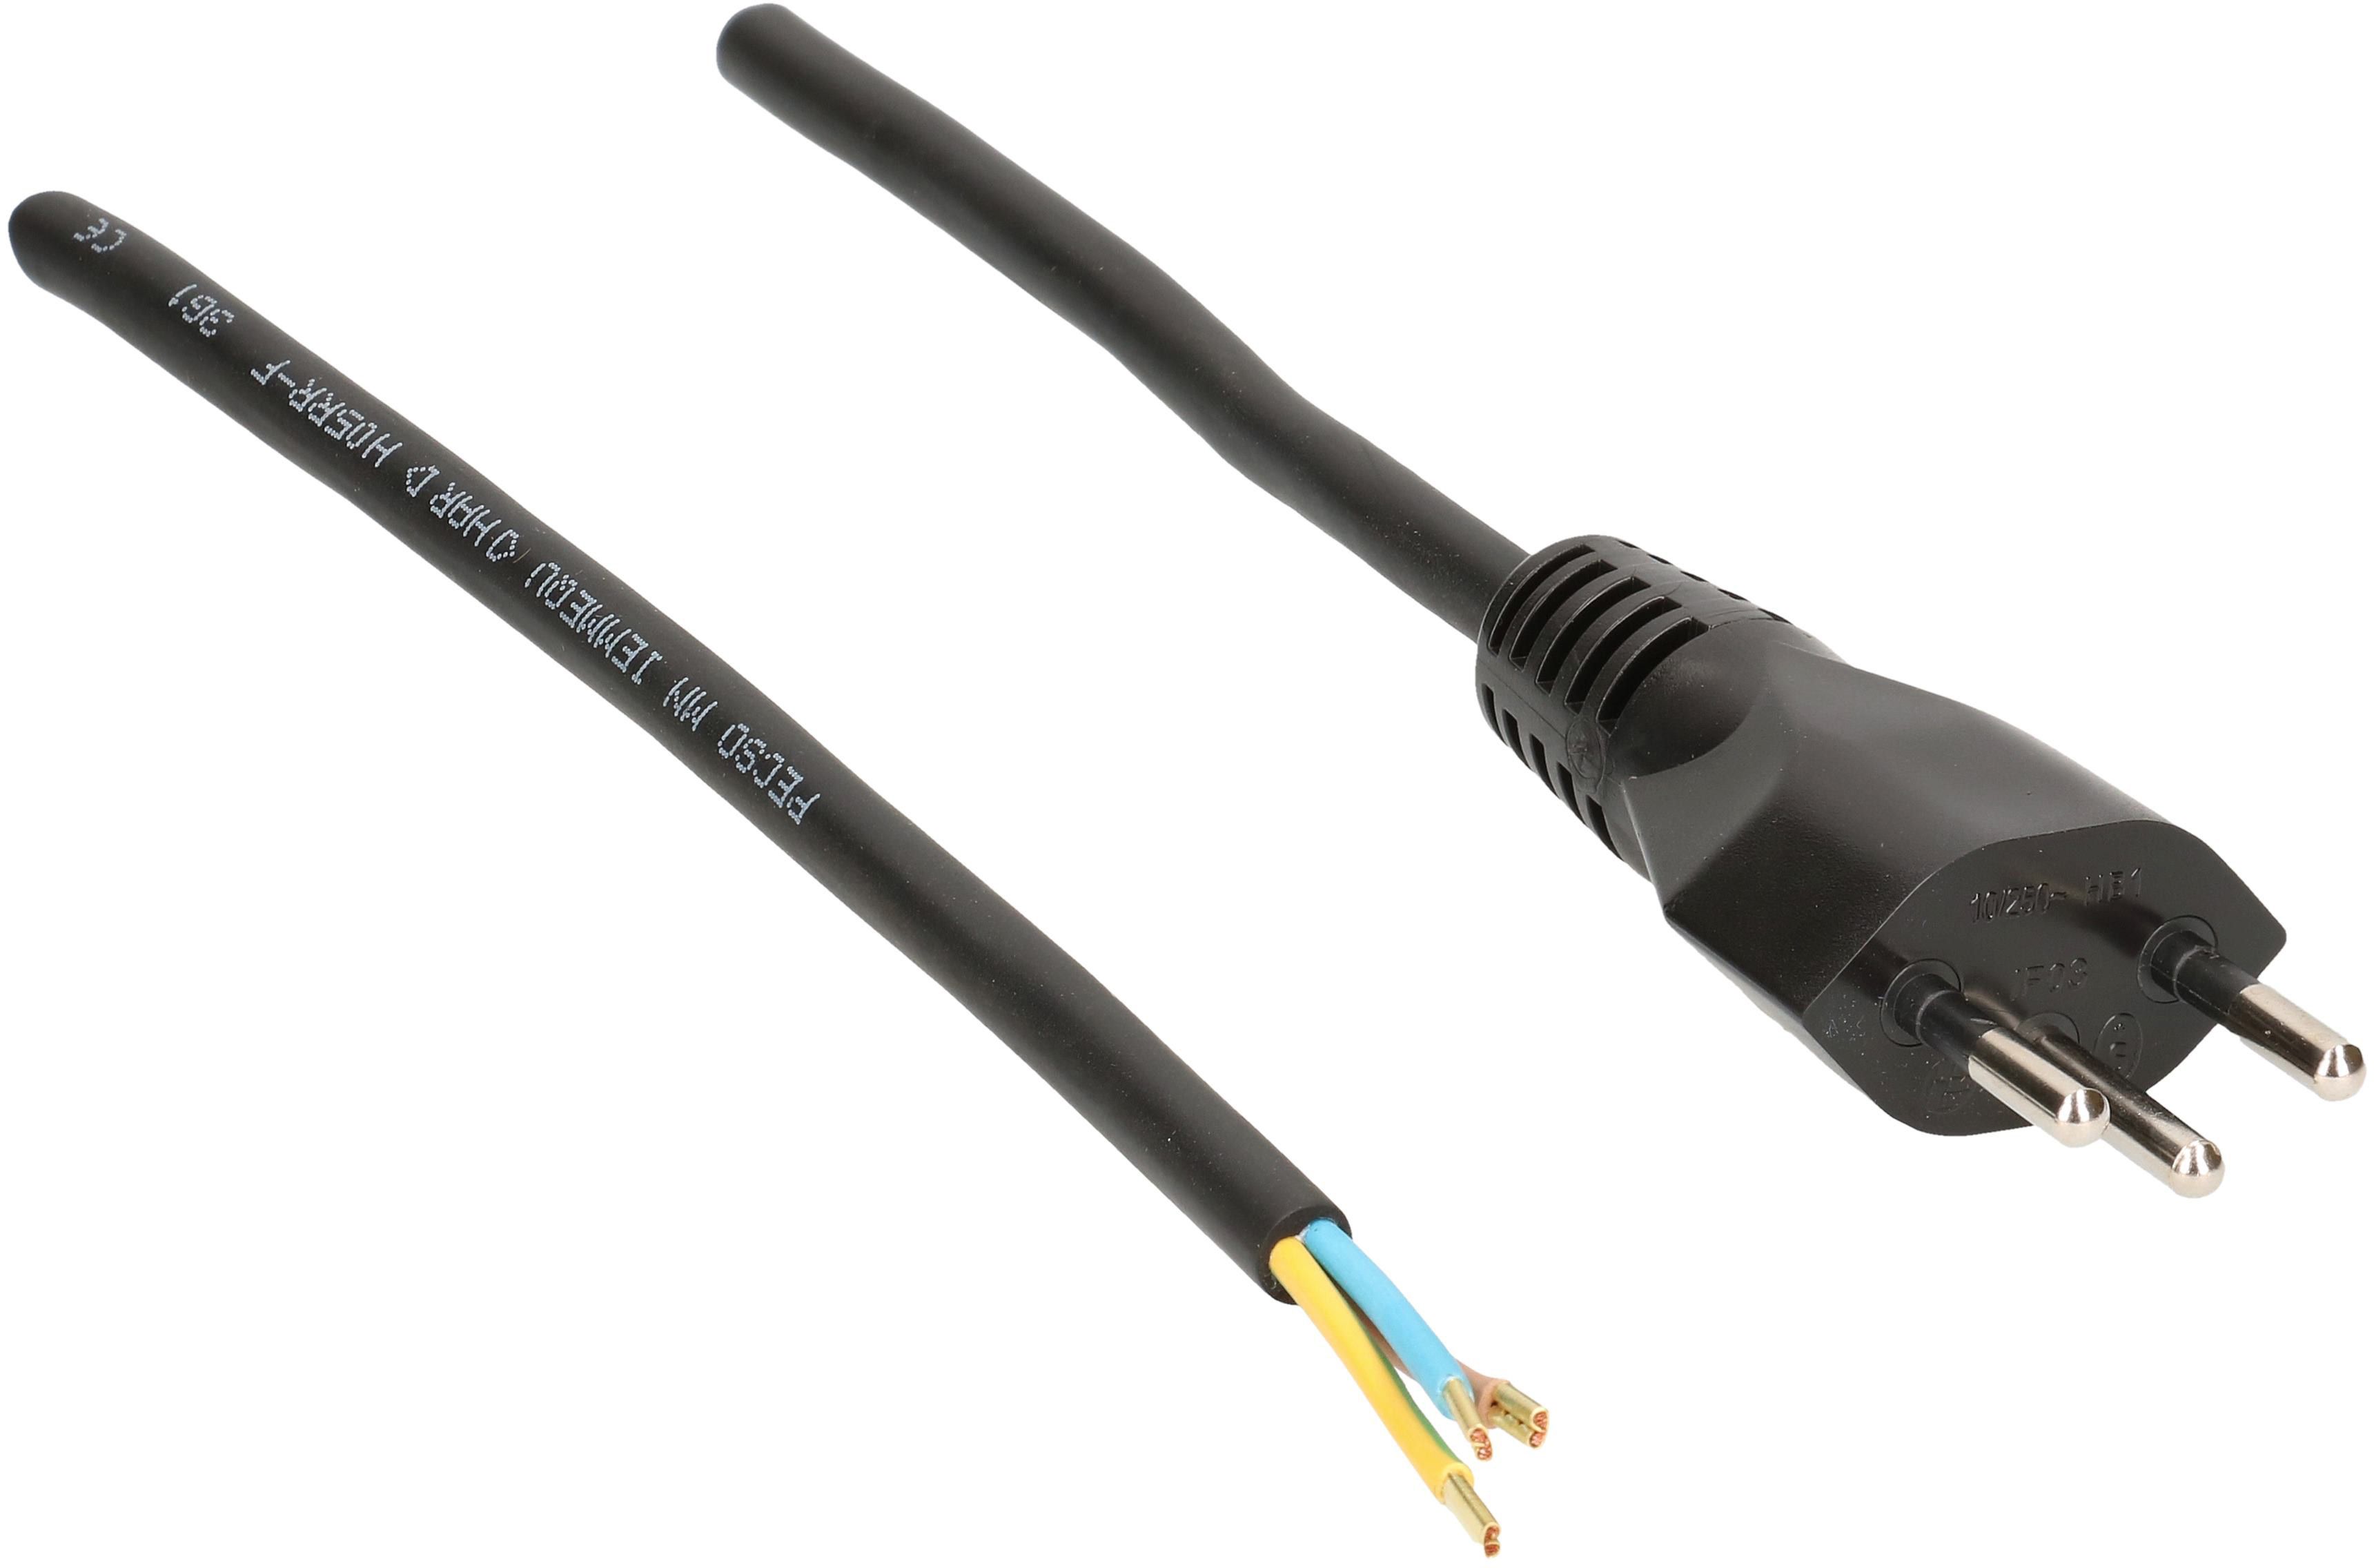 GD câble secteur H05RR-F3G1.0 5m noir type 12